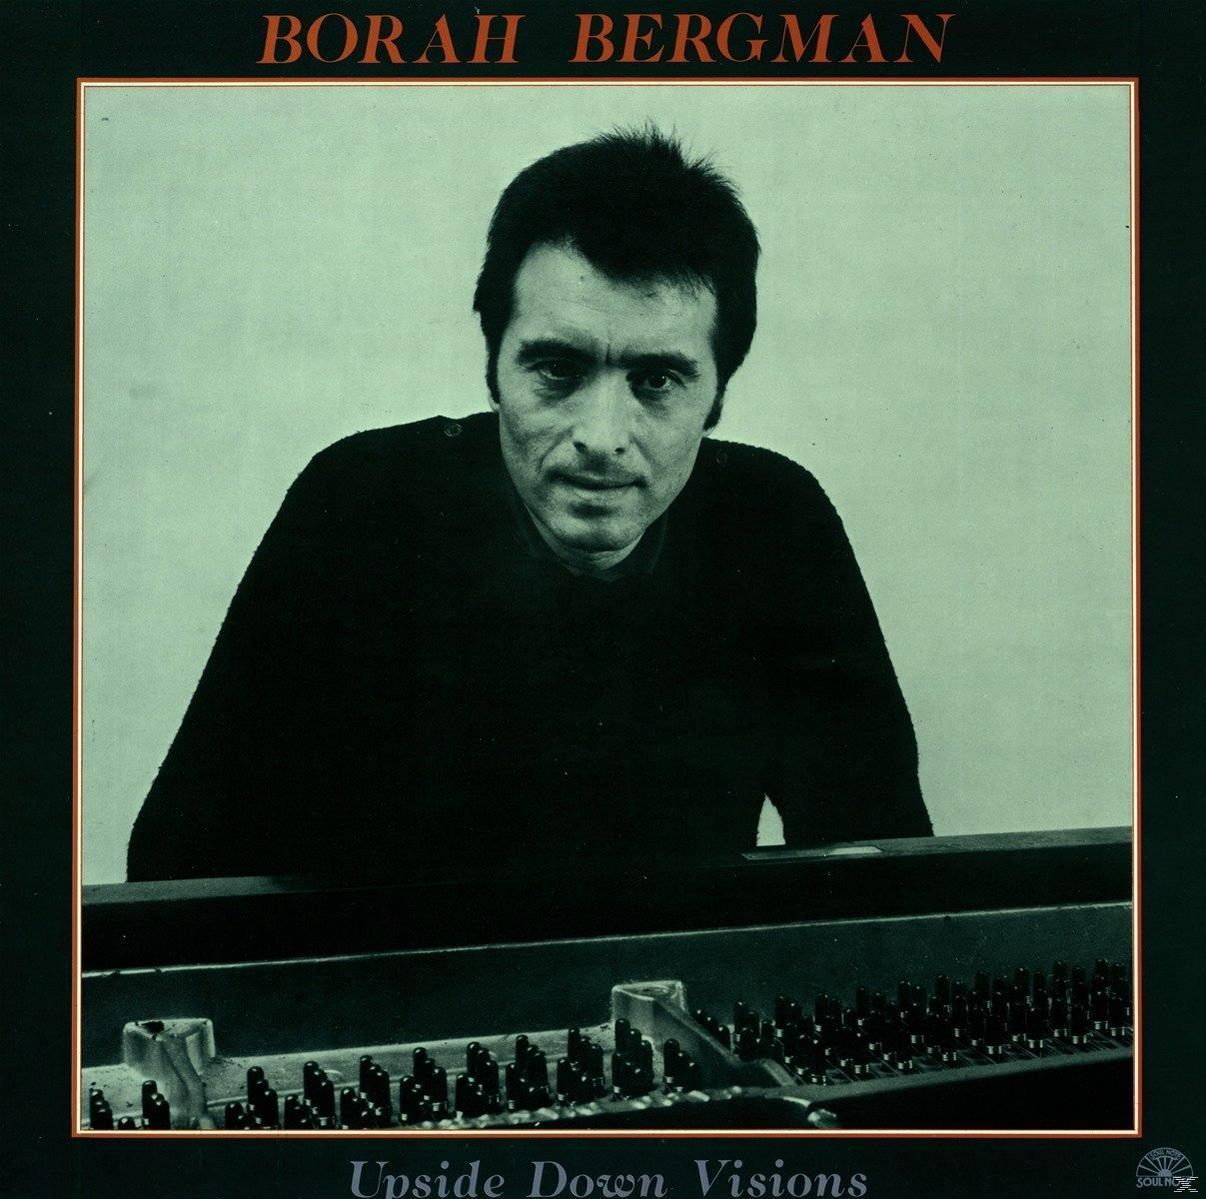 - (Vinyl) Bergman - Borah VISIONS UPSIDE DOWN